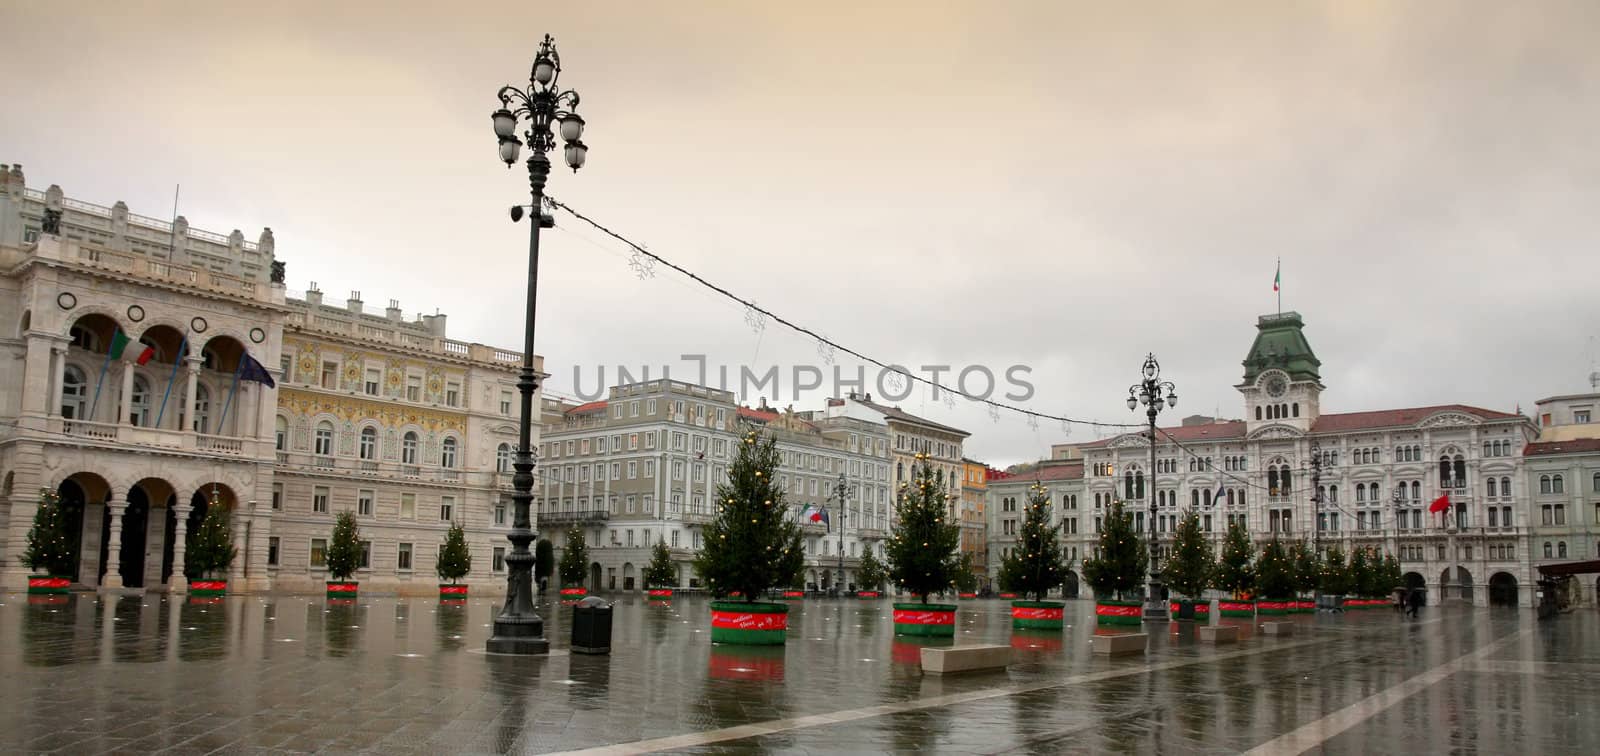  Piazza Unita, Trieste, Italia by vladacanon